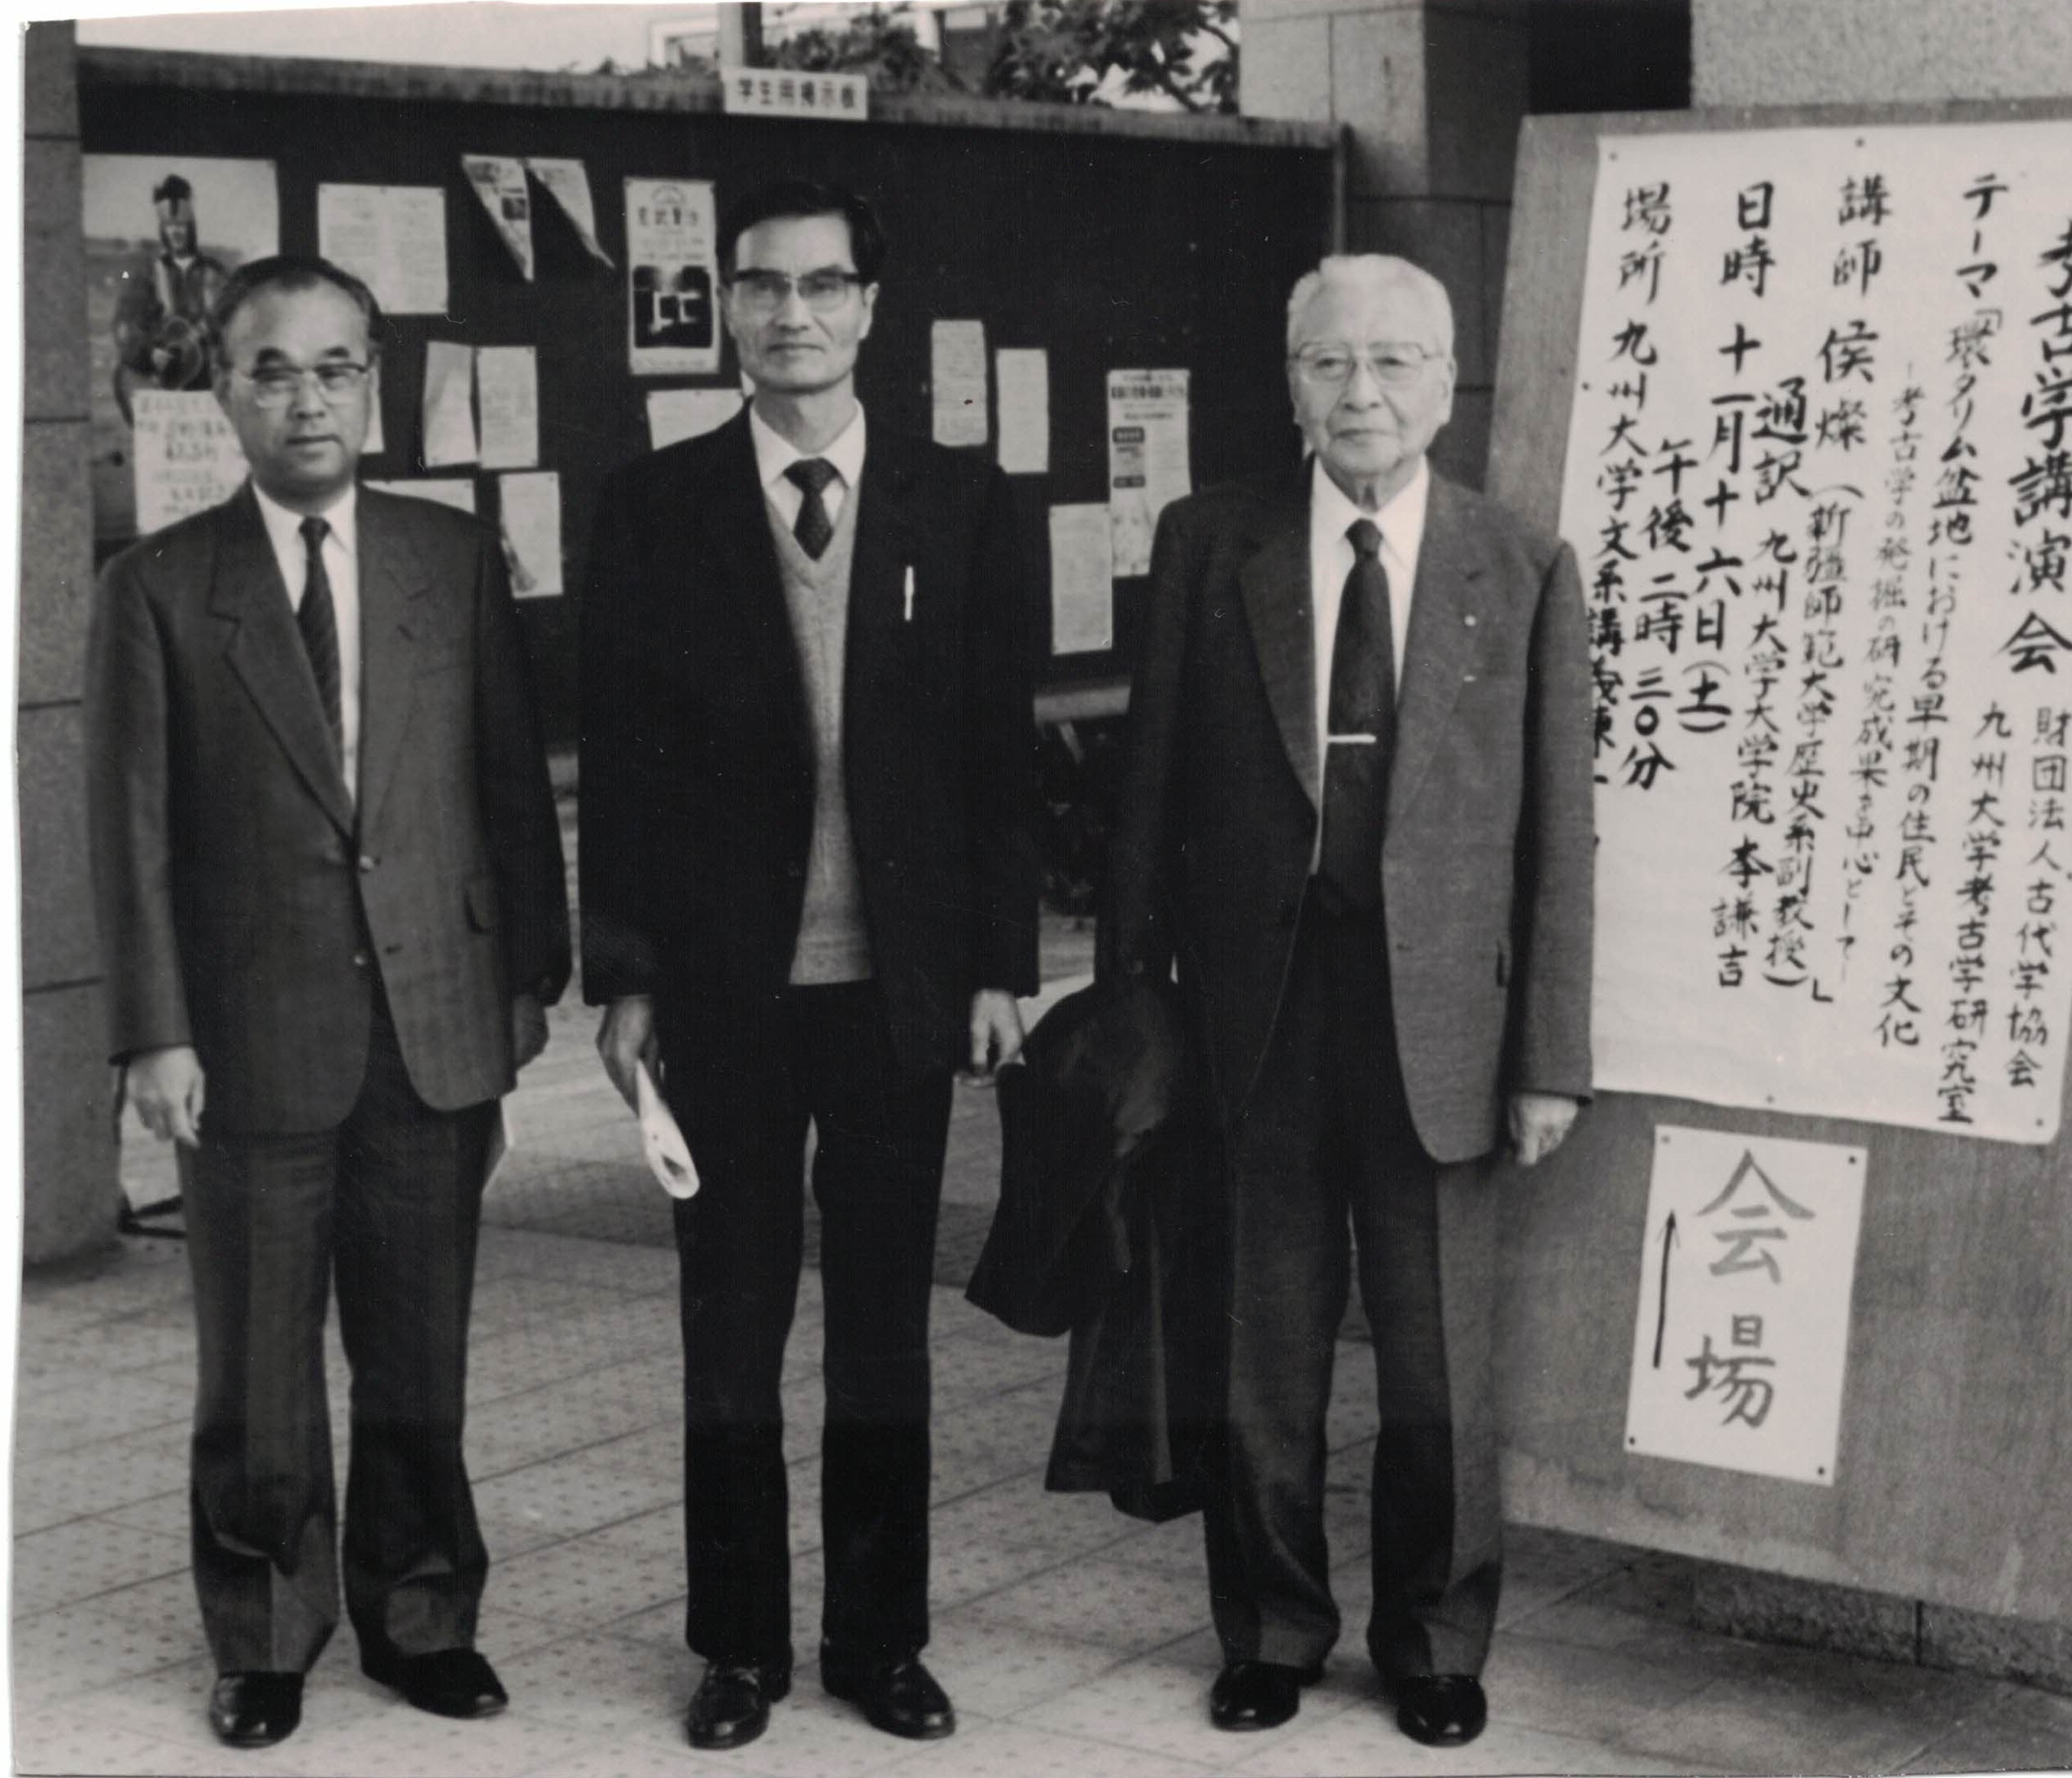 1991年11月16日，侯灿先生留影于九州大学学术演讲厅前